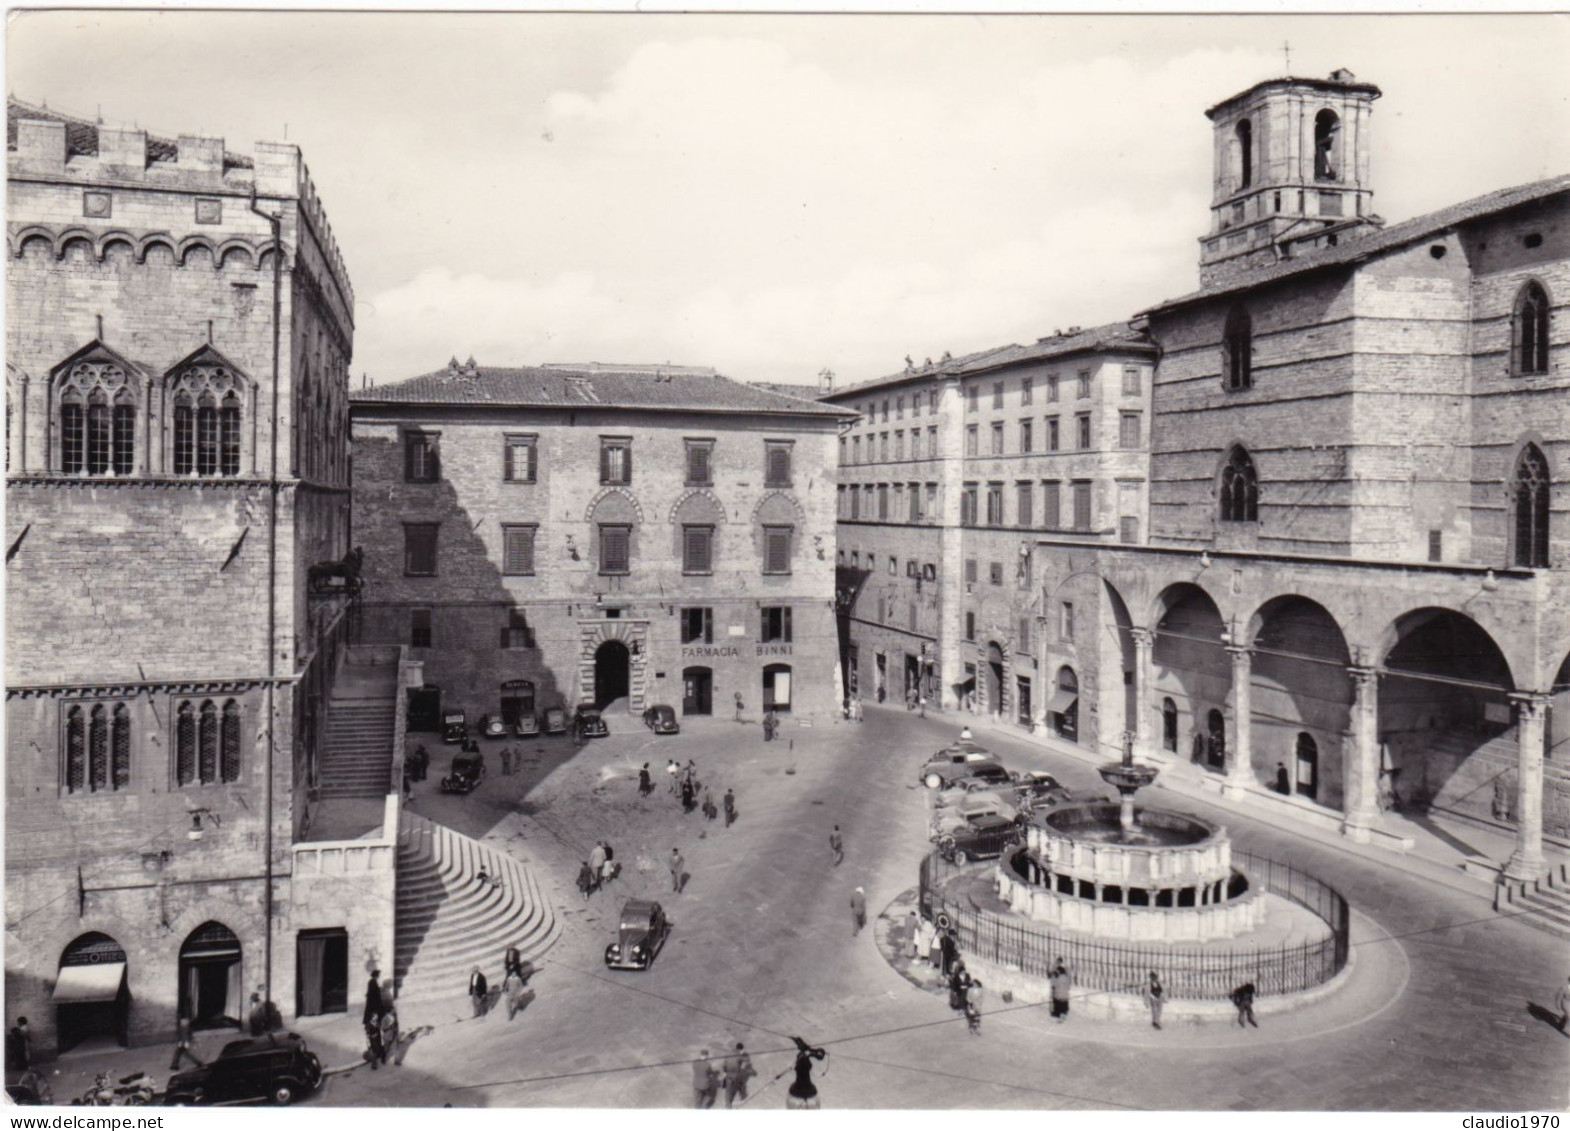 PERUGIA - CARTOLINA  - PIAZZA 4 NOVEMBRE CON LA FONTANA MAGGIORE -  VIAGGIATA PER TRENTO - 1956 - Perugia